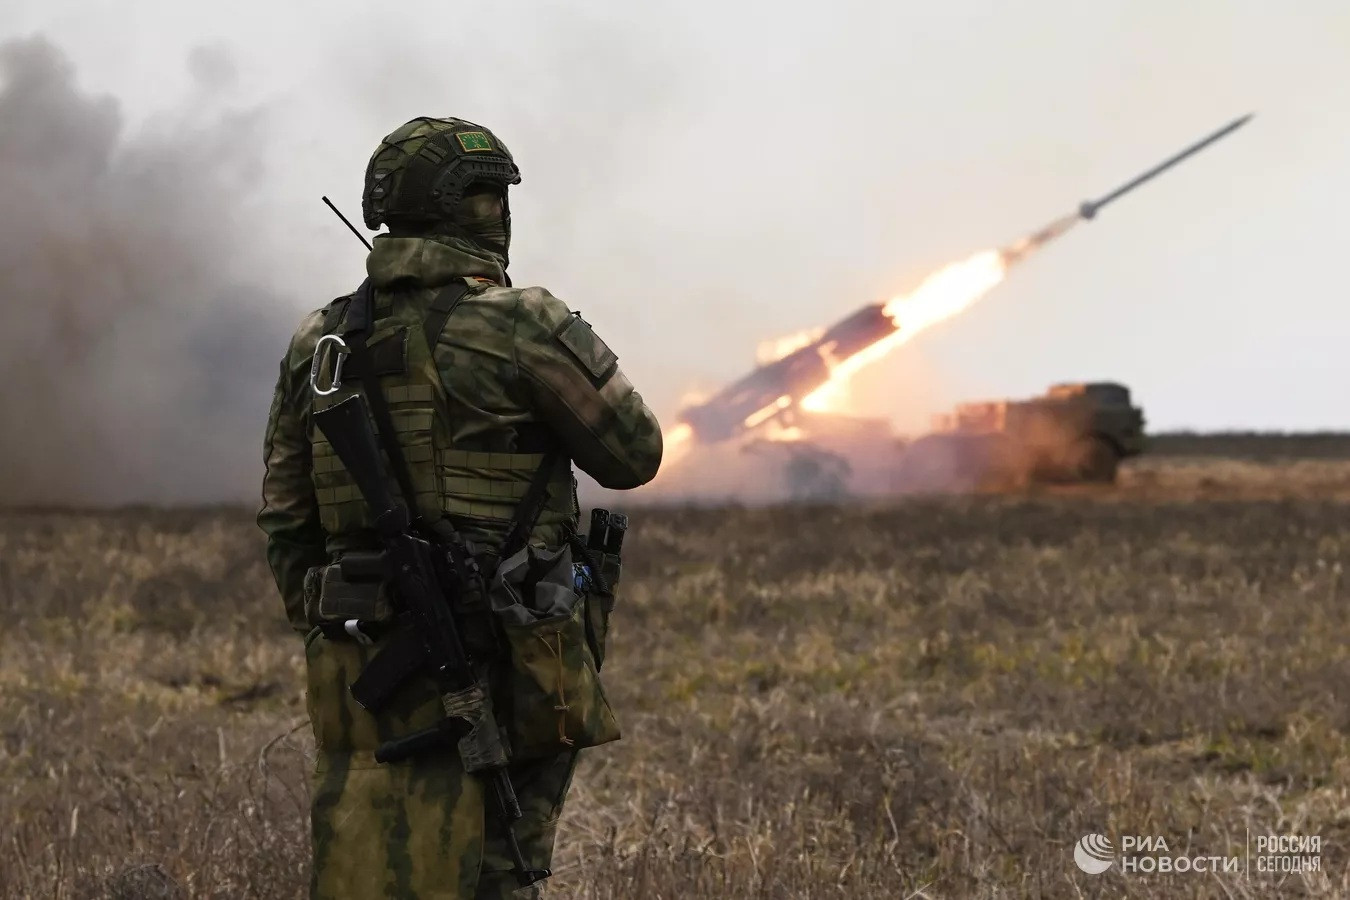 Ukraine có nguy cơ mất quyền kiểm soát bầu trời, Nga nói về tình hình Bakhmut